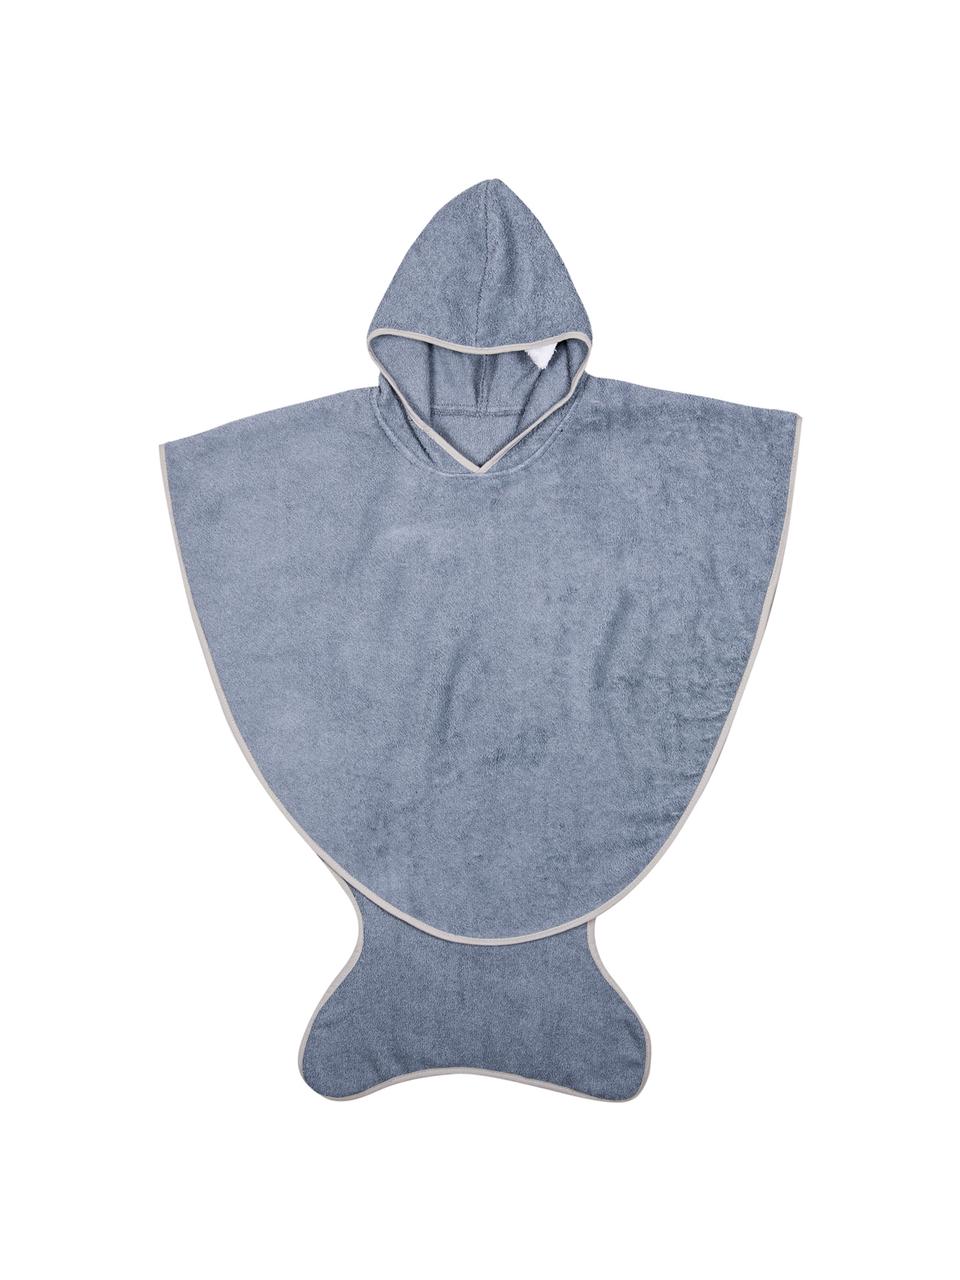 Ręcznik kąpielowy dla dzieci Fish, Bawełna, Niebieskoszary, S 71 x W 87 cm